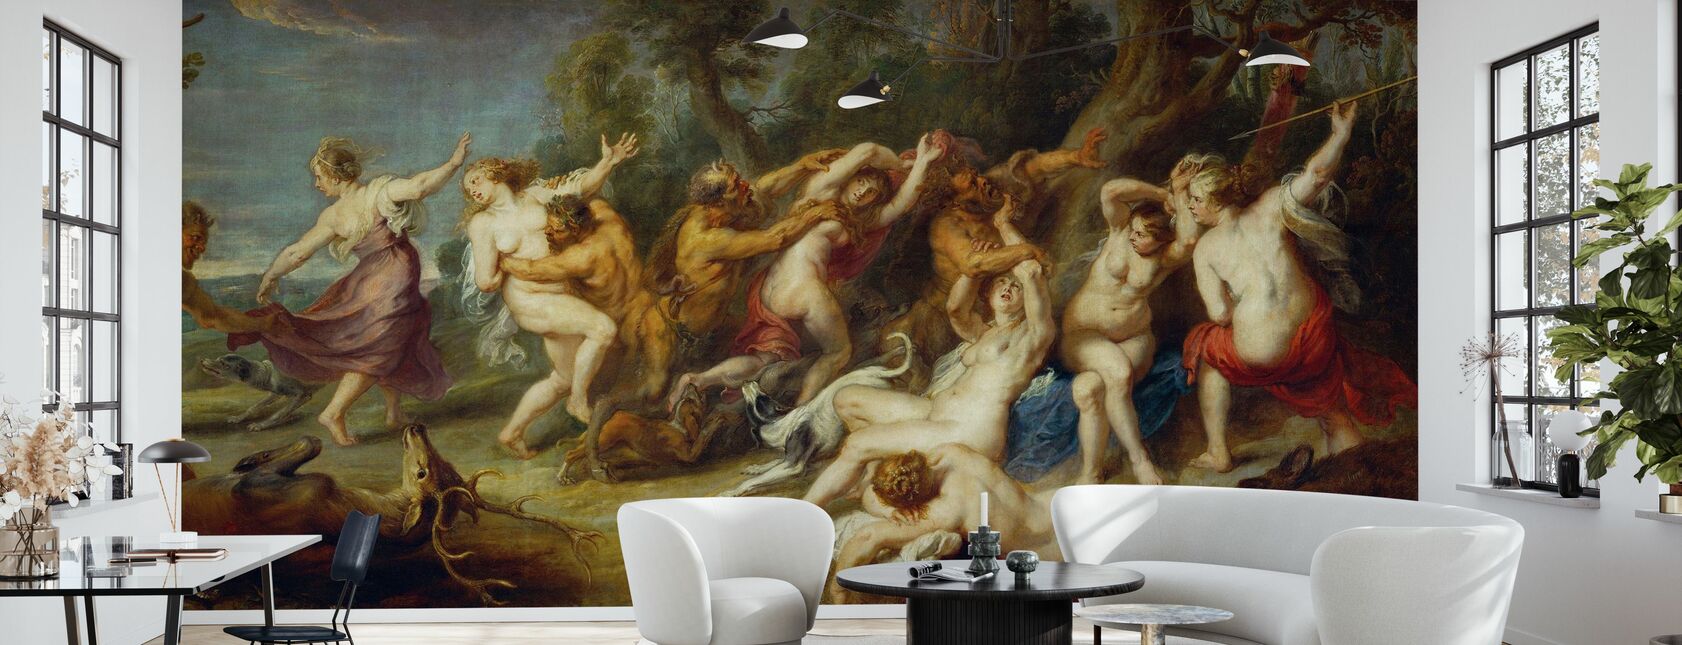 Diana und ihre Nymphen, Peter Paul Rubens - Tapete - Wohnzimmer